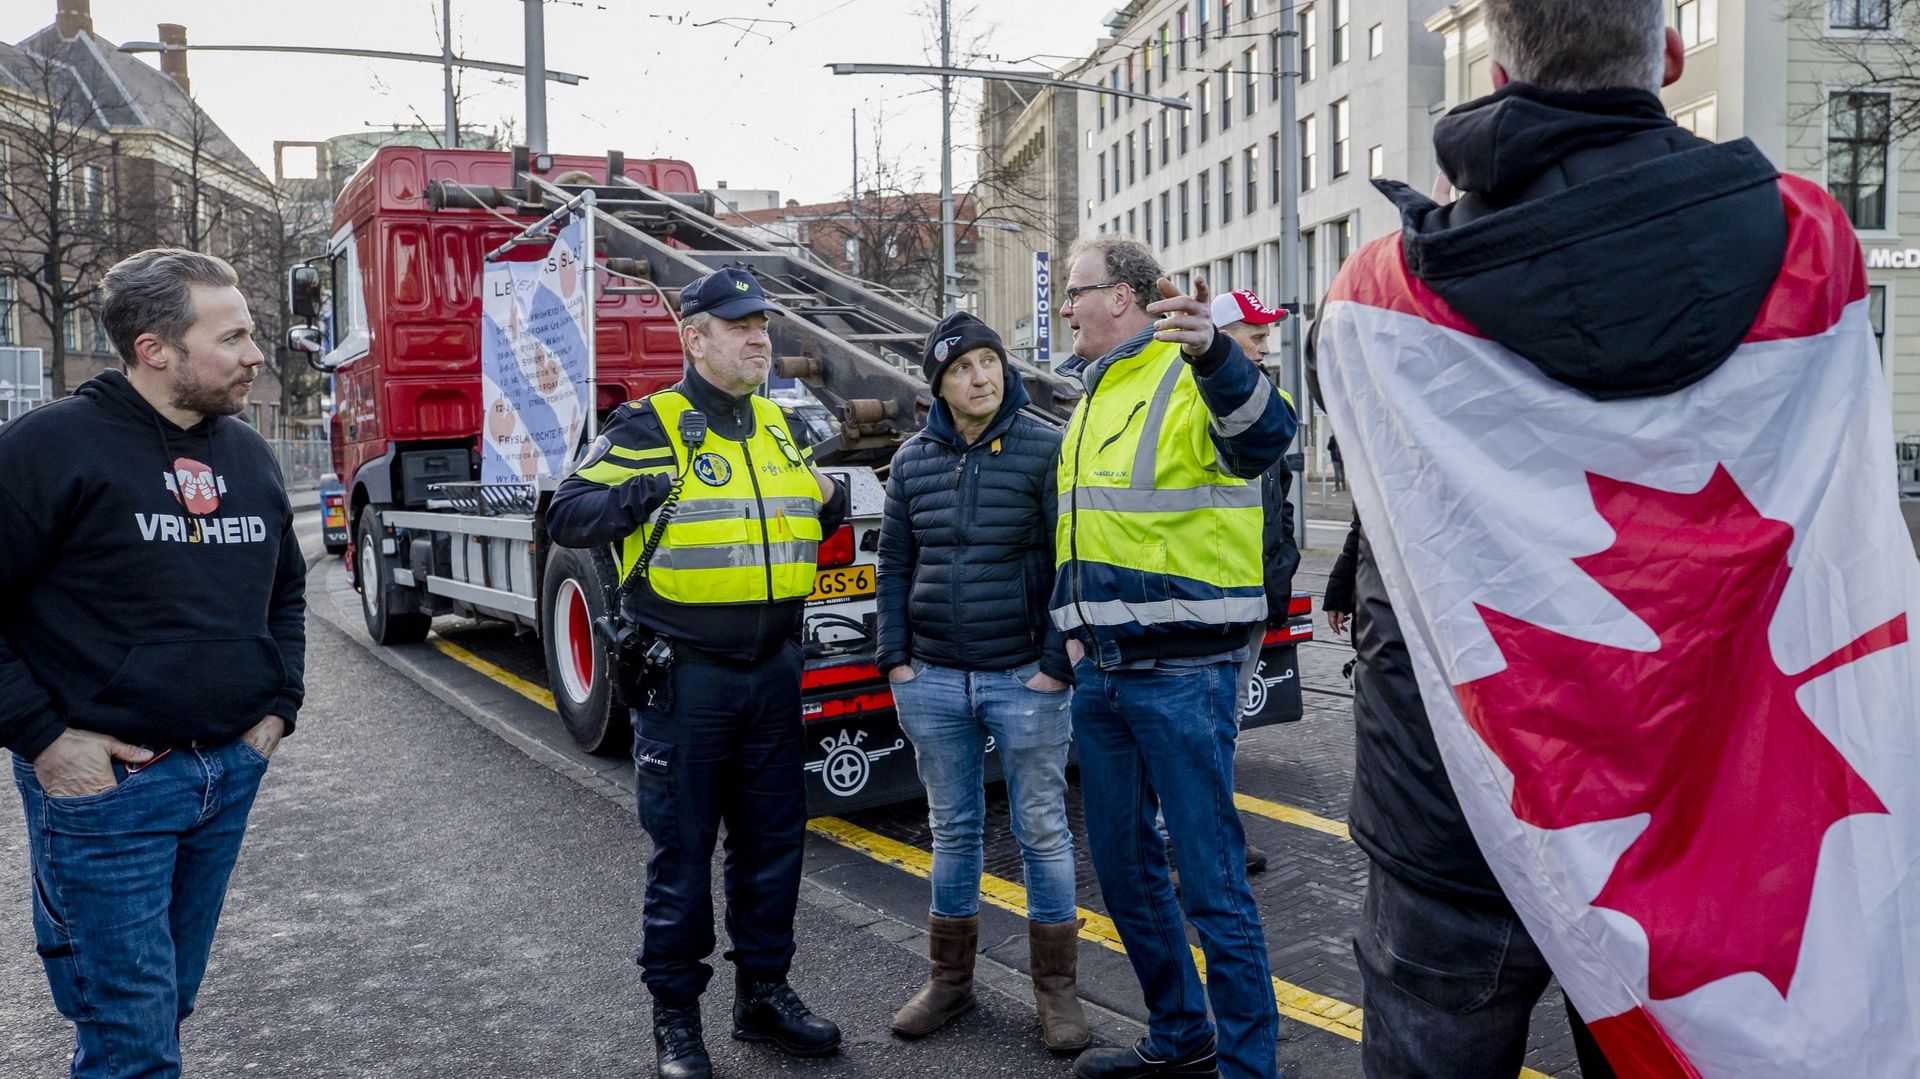 Plus tôt dans la journée, des policiers parlaient à des manifestants portant un drapeau canadien à l’entrée du Binnenhof lors d’une manifestation contre les mesures corona, à La Haye. L’action s’inspire du soi-disant convoi de la liberté au Canada avec le